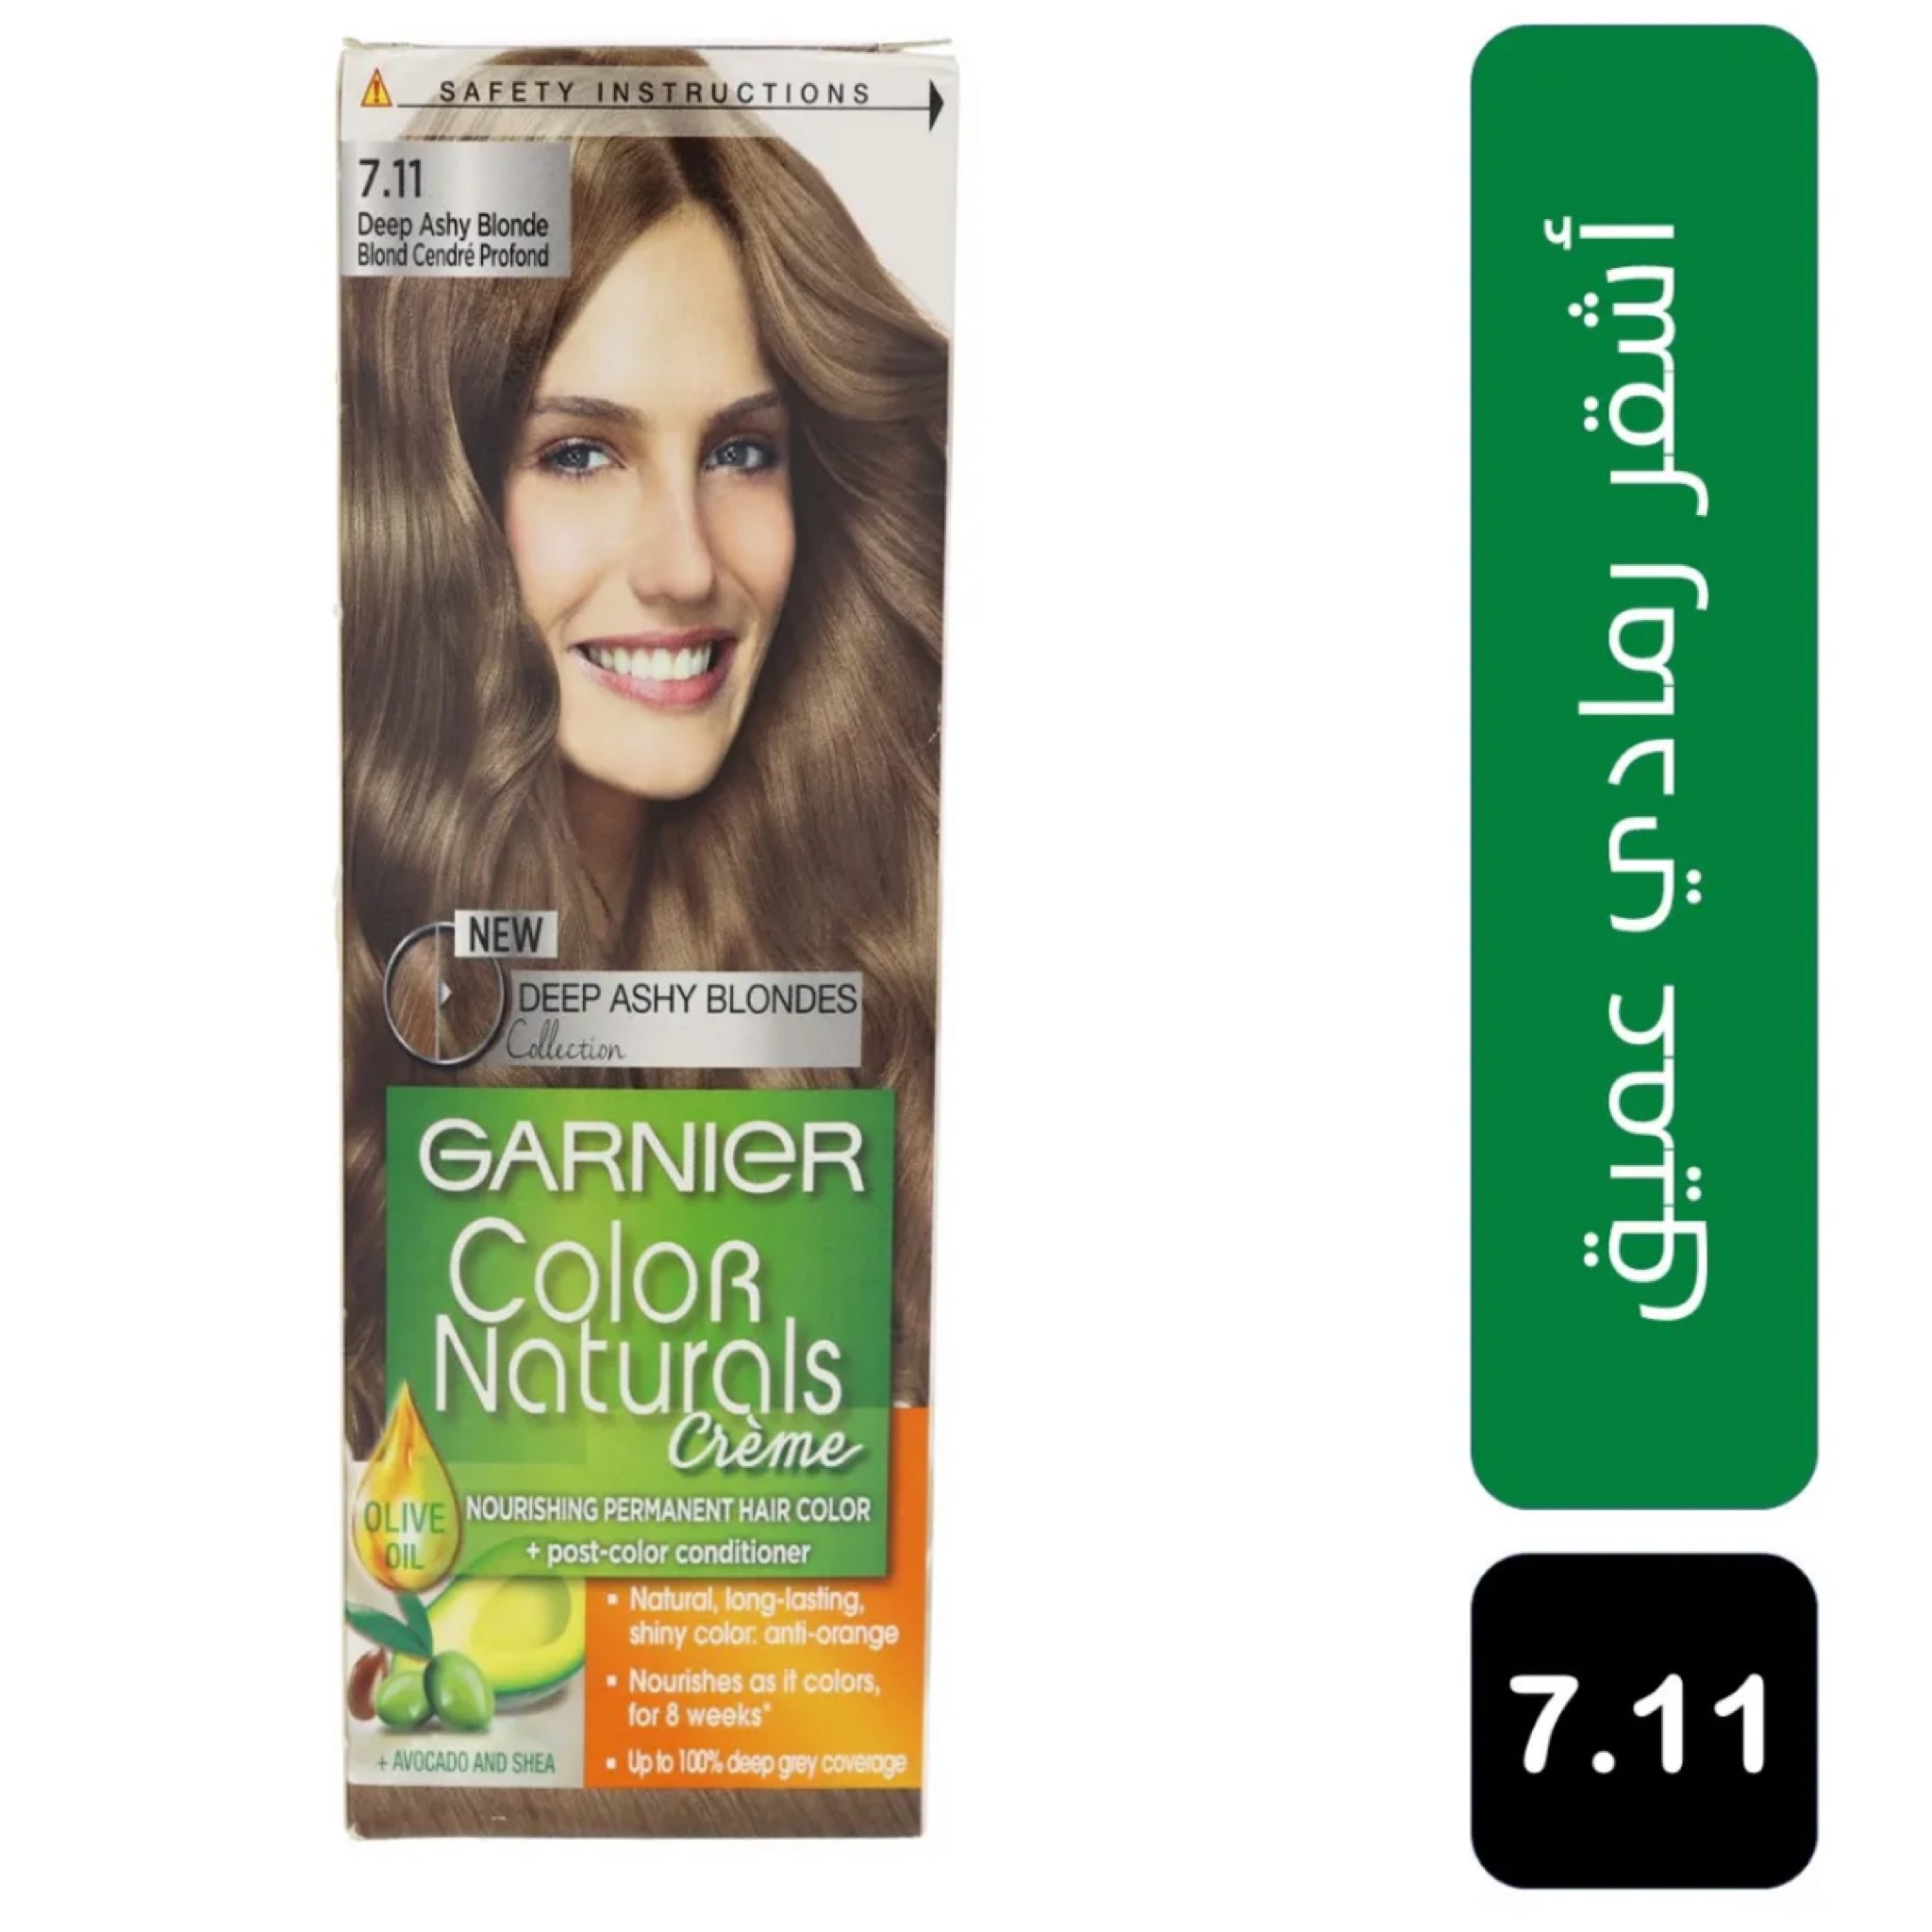 صبغة غارنيه لون أشقر رمادي بزيوت طبيعية مغذية للشعر7.11 ( Garnier Color Naturals )